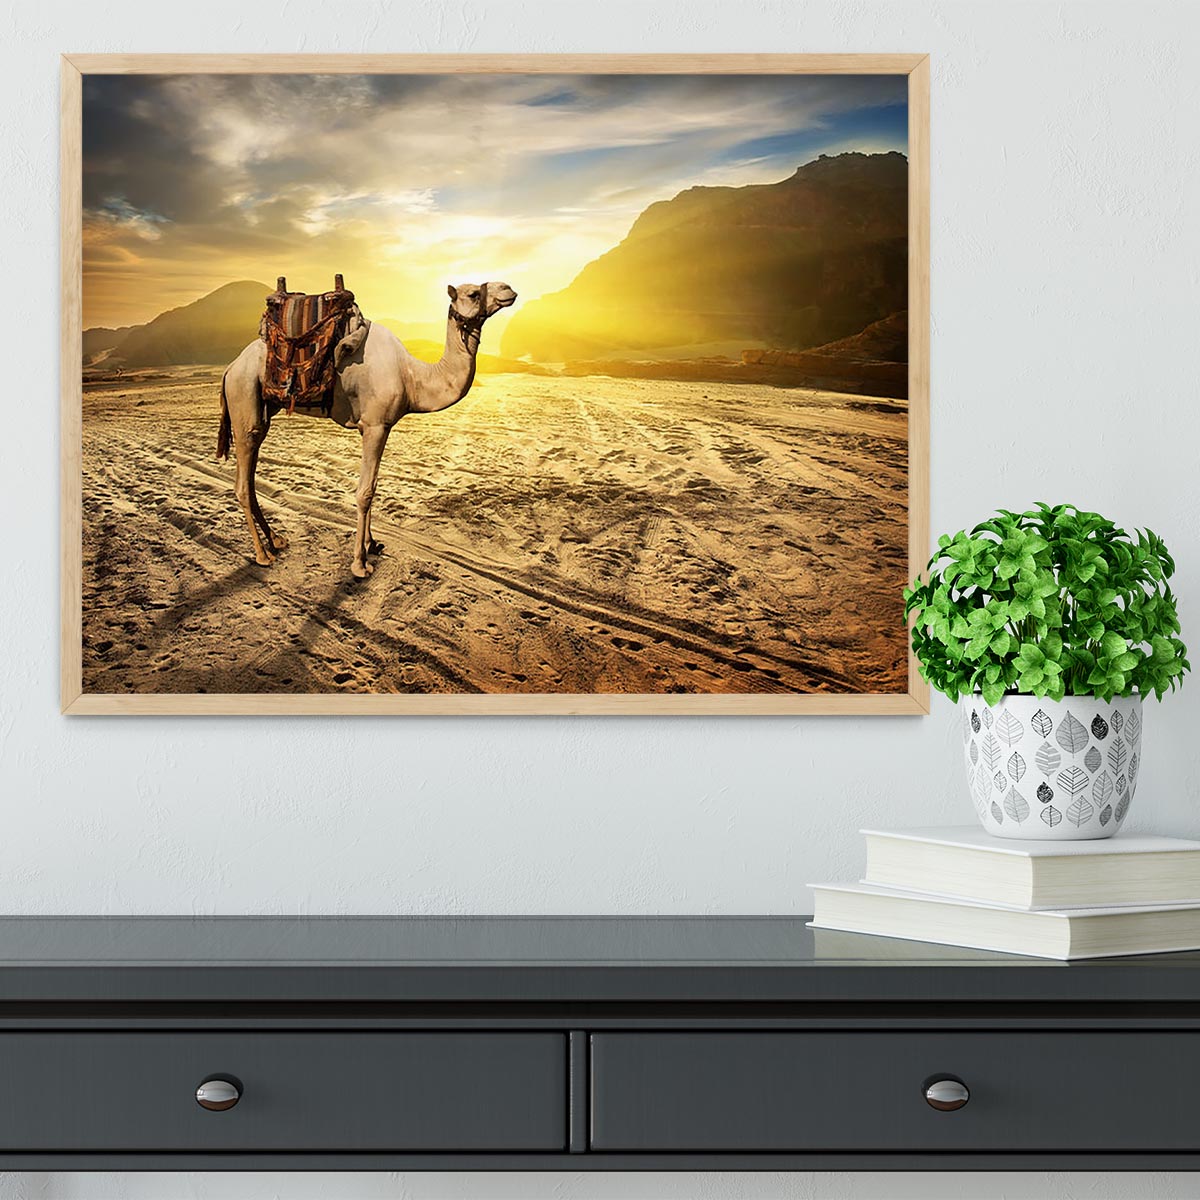 Camel in sandy desert near mountains at sunset Framed Print - Canvas Art Rocks - 4